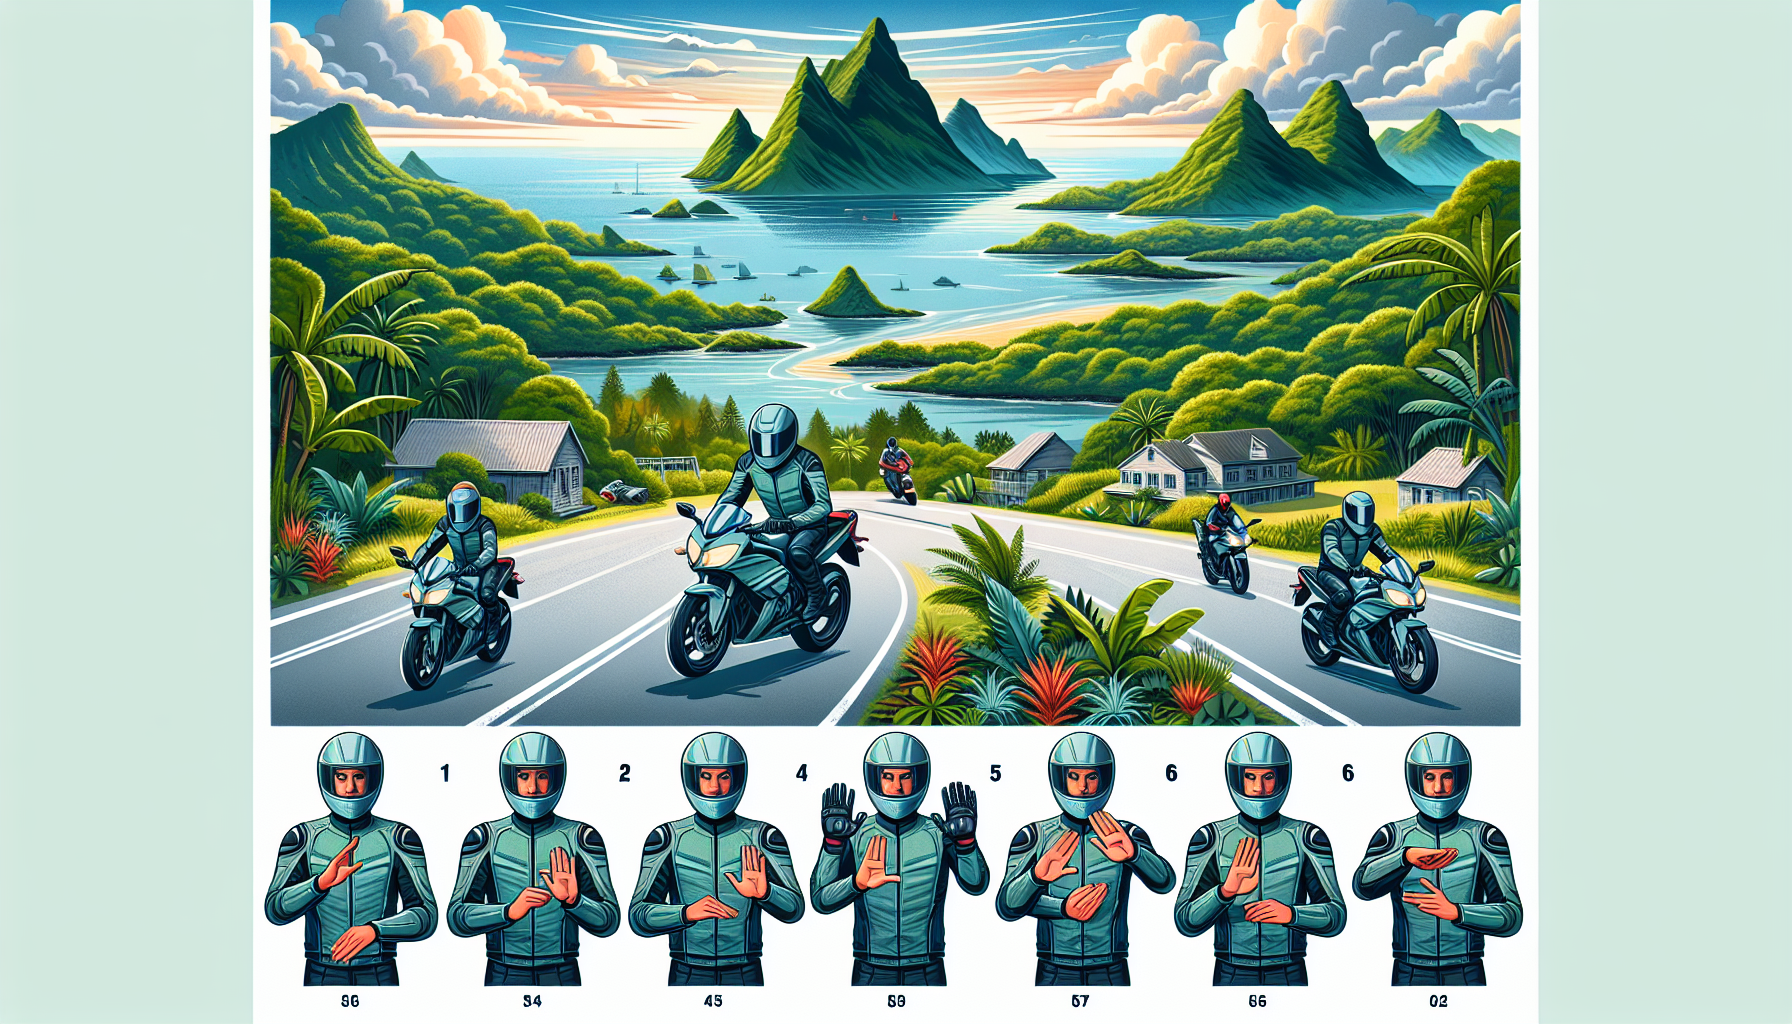 découvrez les bonnes pratiques de conduite moto à la réunion pour une expérience sécurisée et agréable sur les routes de l'île. conseils et règles à connaître pour une conduite responsable.